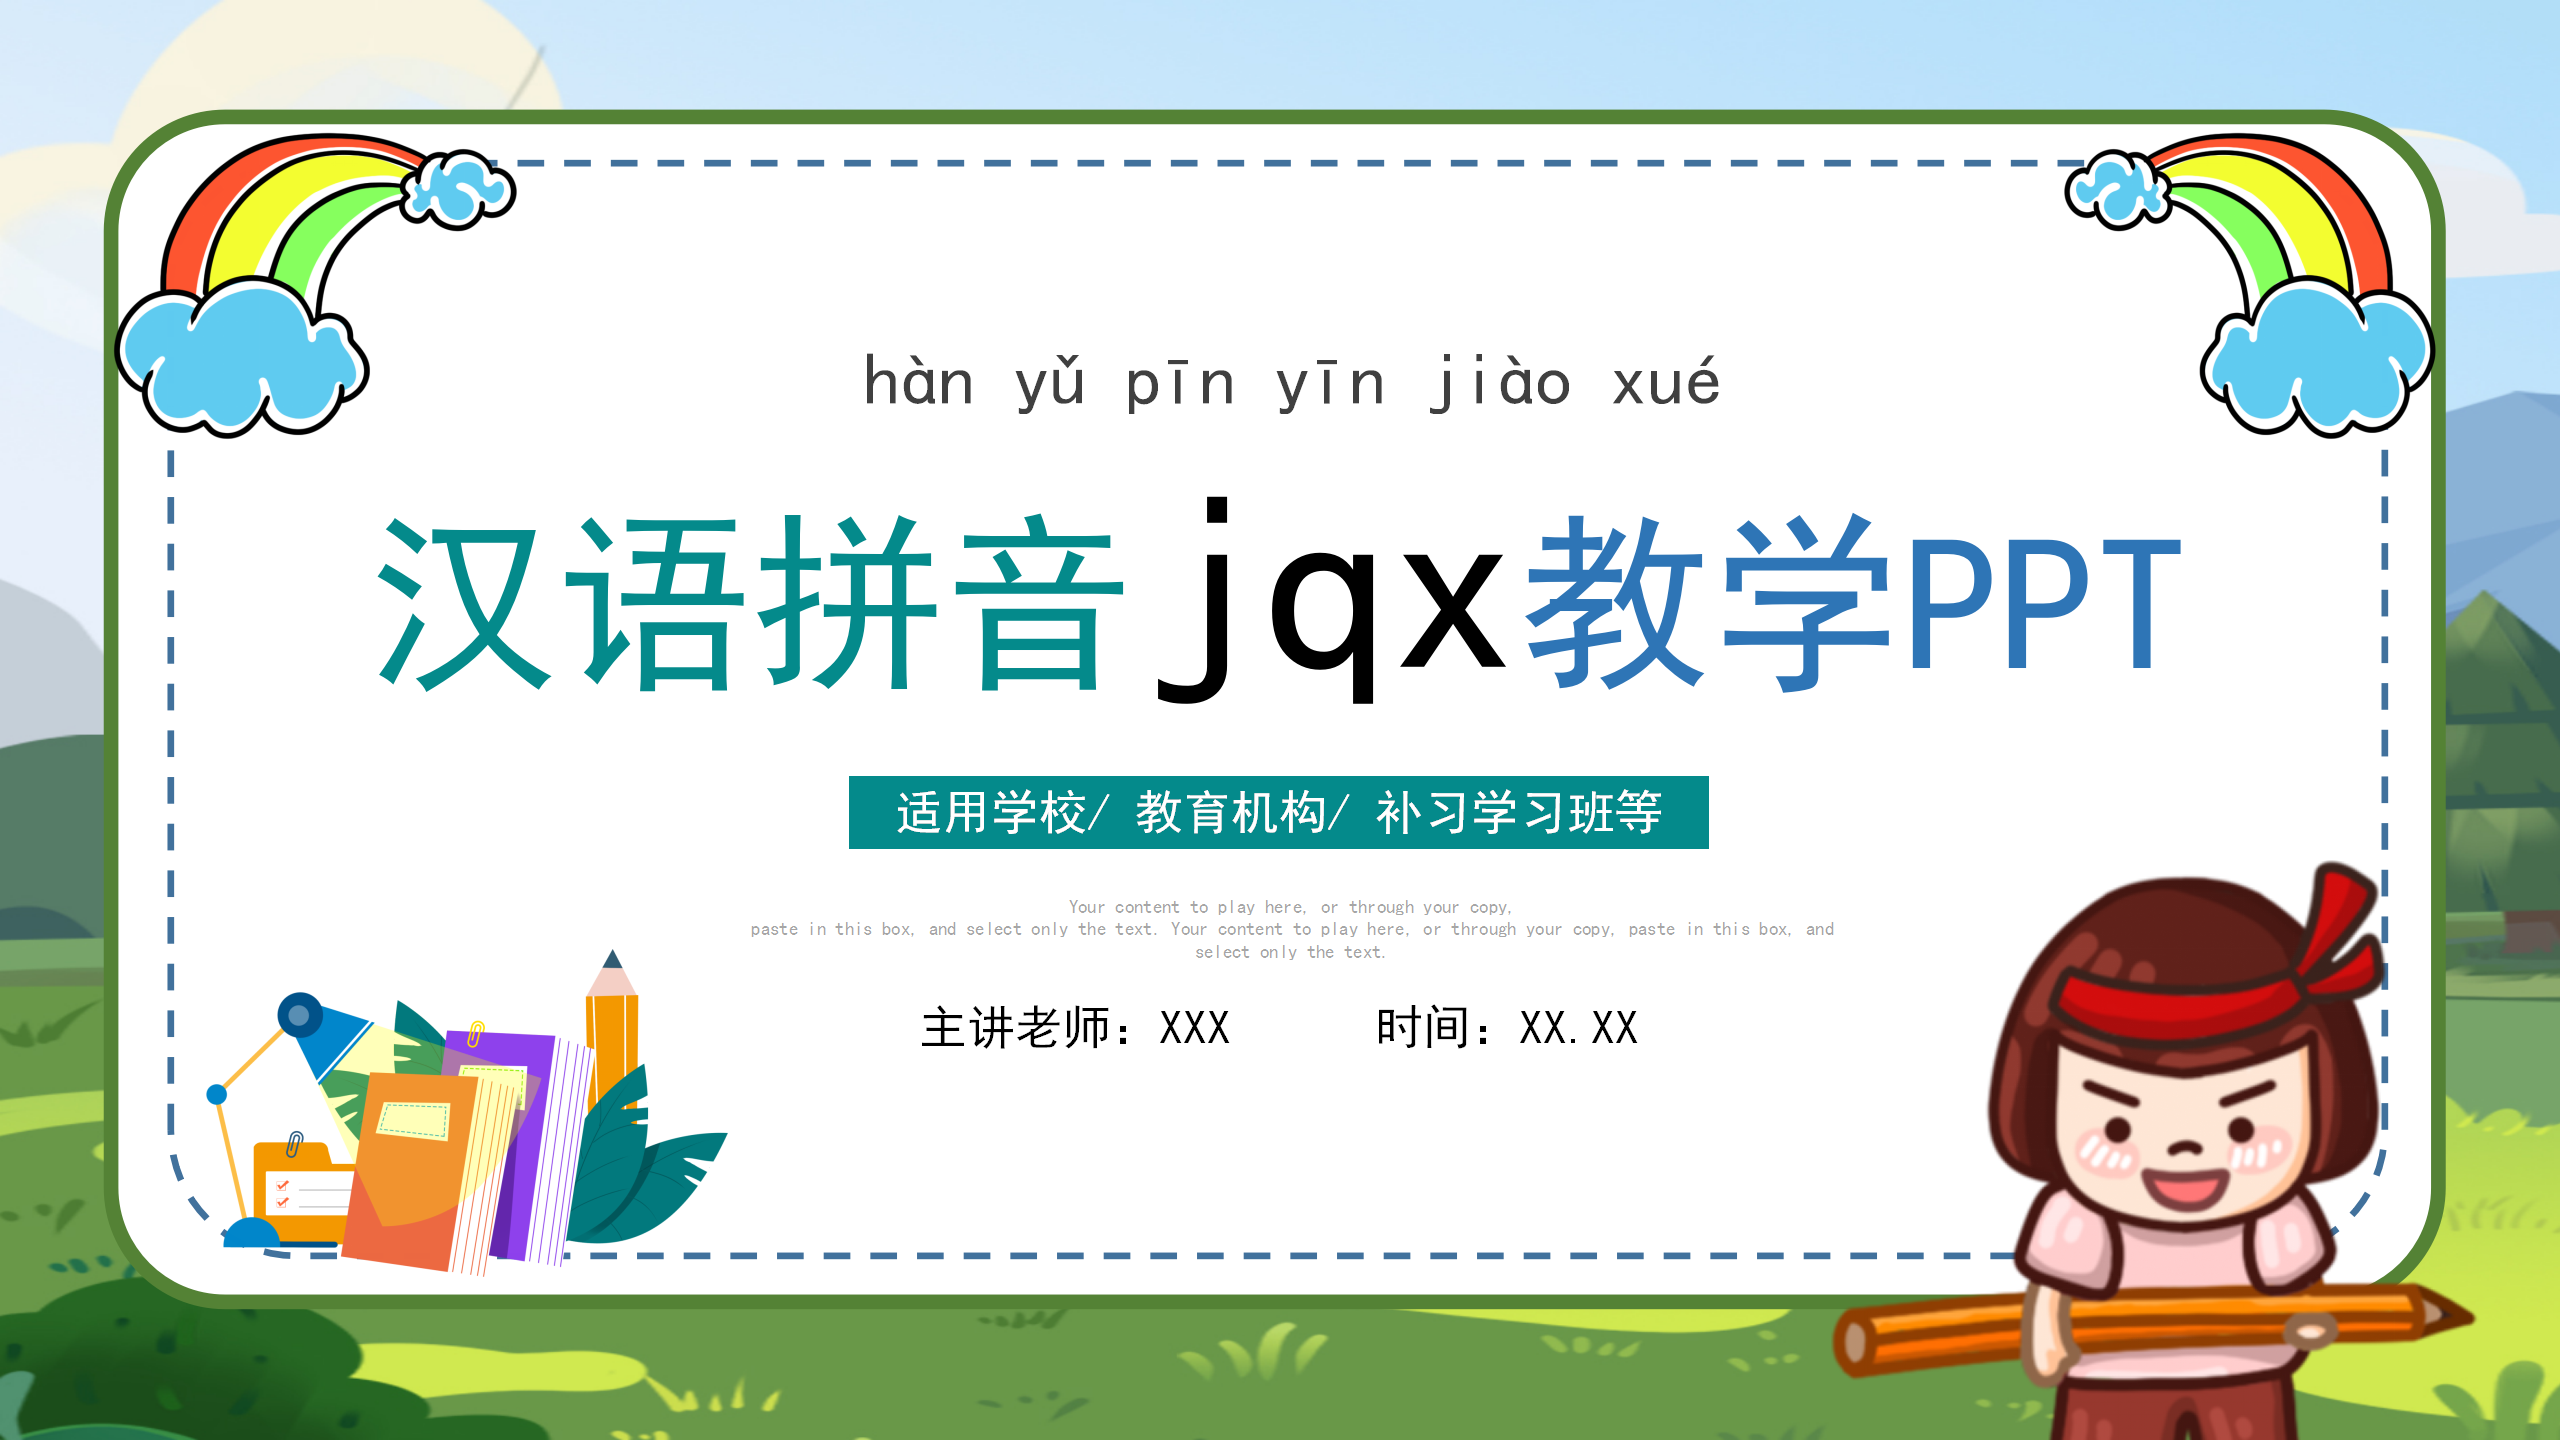 小学语文拼音《jqx》ppt课件模板